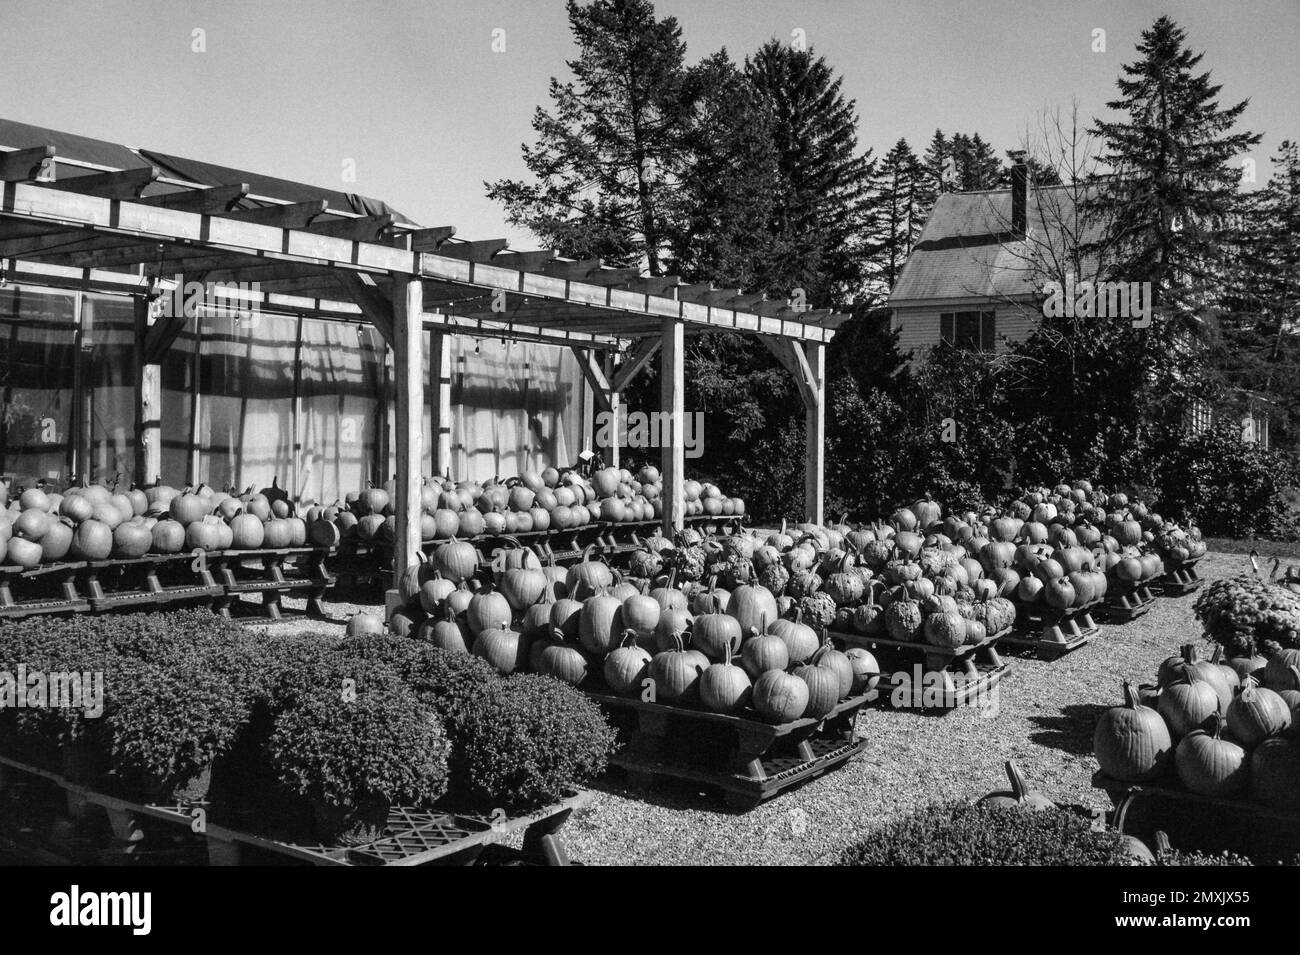 Ein Gemüsestand mit einer großen Auswahl geernteter Kürbisse auf einem Bauernhof. Littleton Massachusetts. Das Bild wurde auf analogem Schwarzweißfilm aufgenommen. Stockfoto